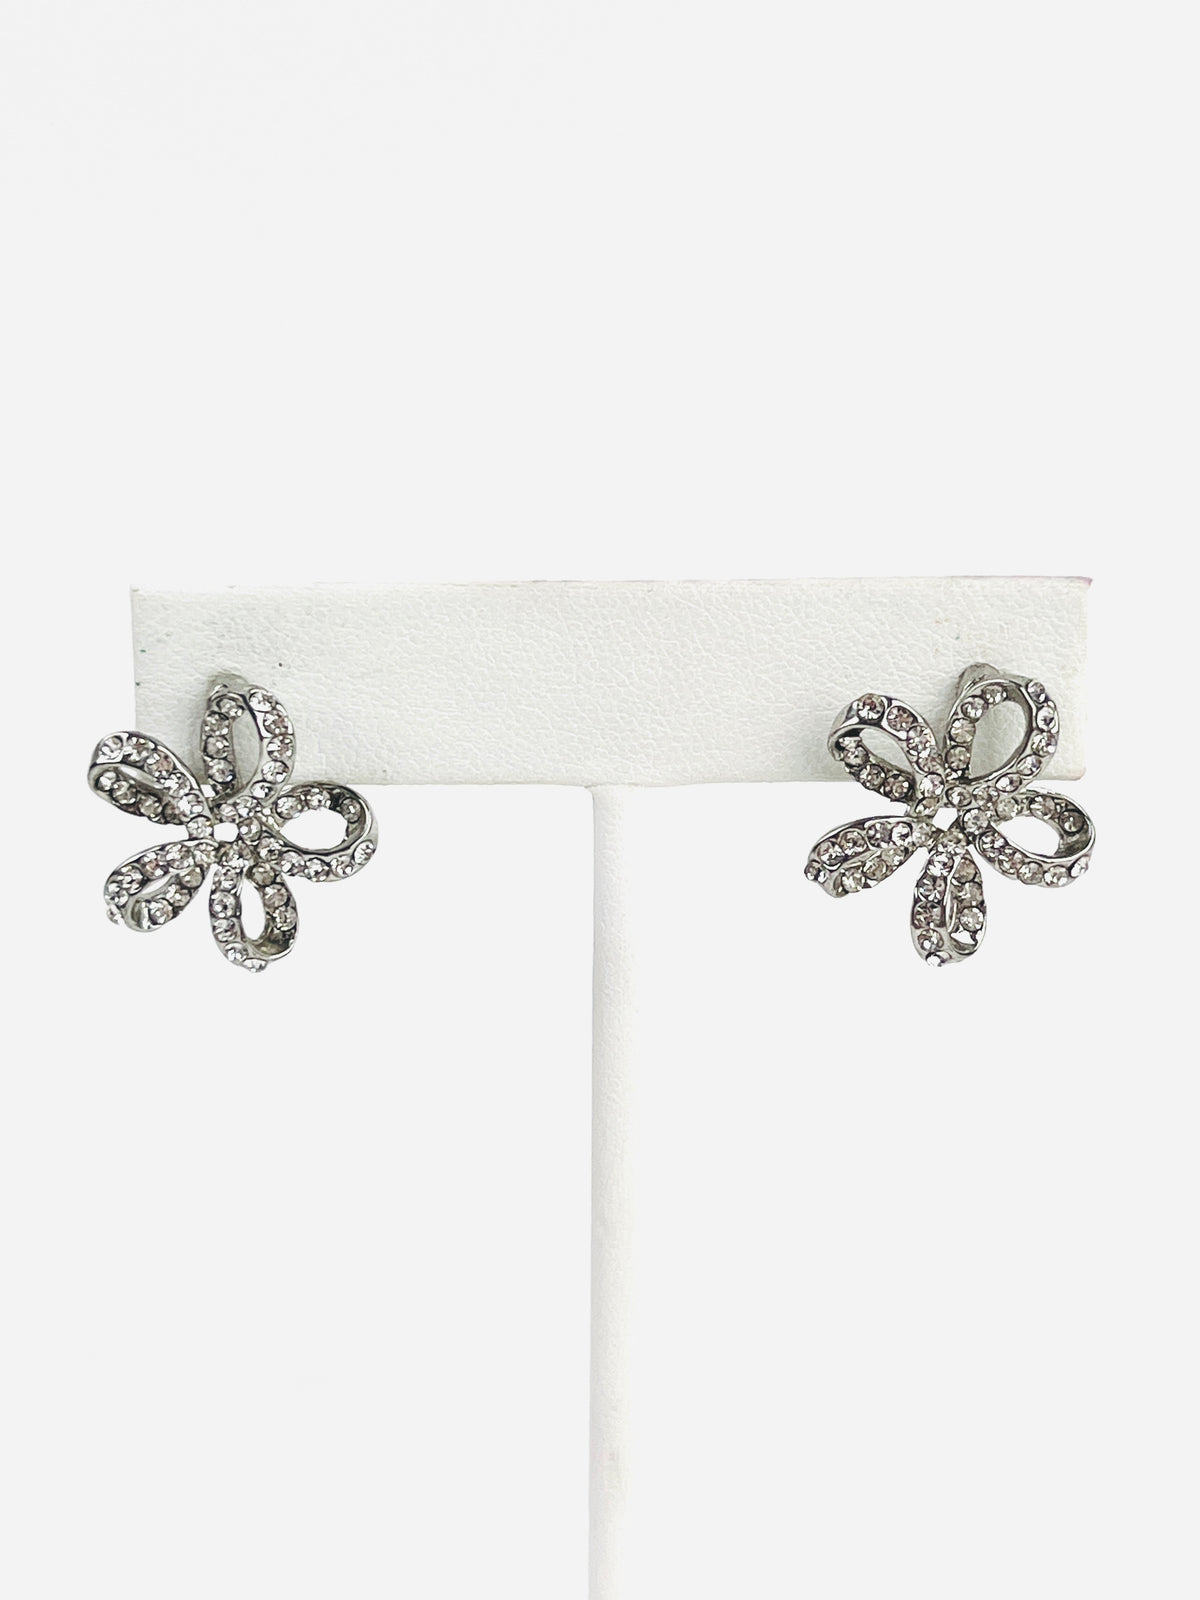 Vintage Rhinestone Flower Earrings